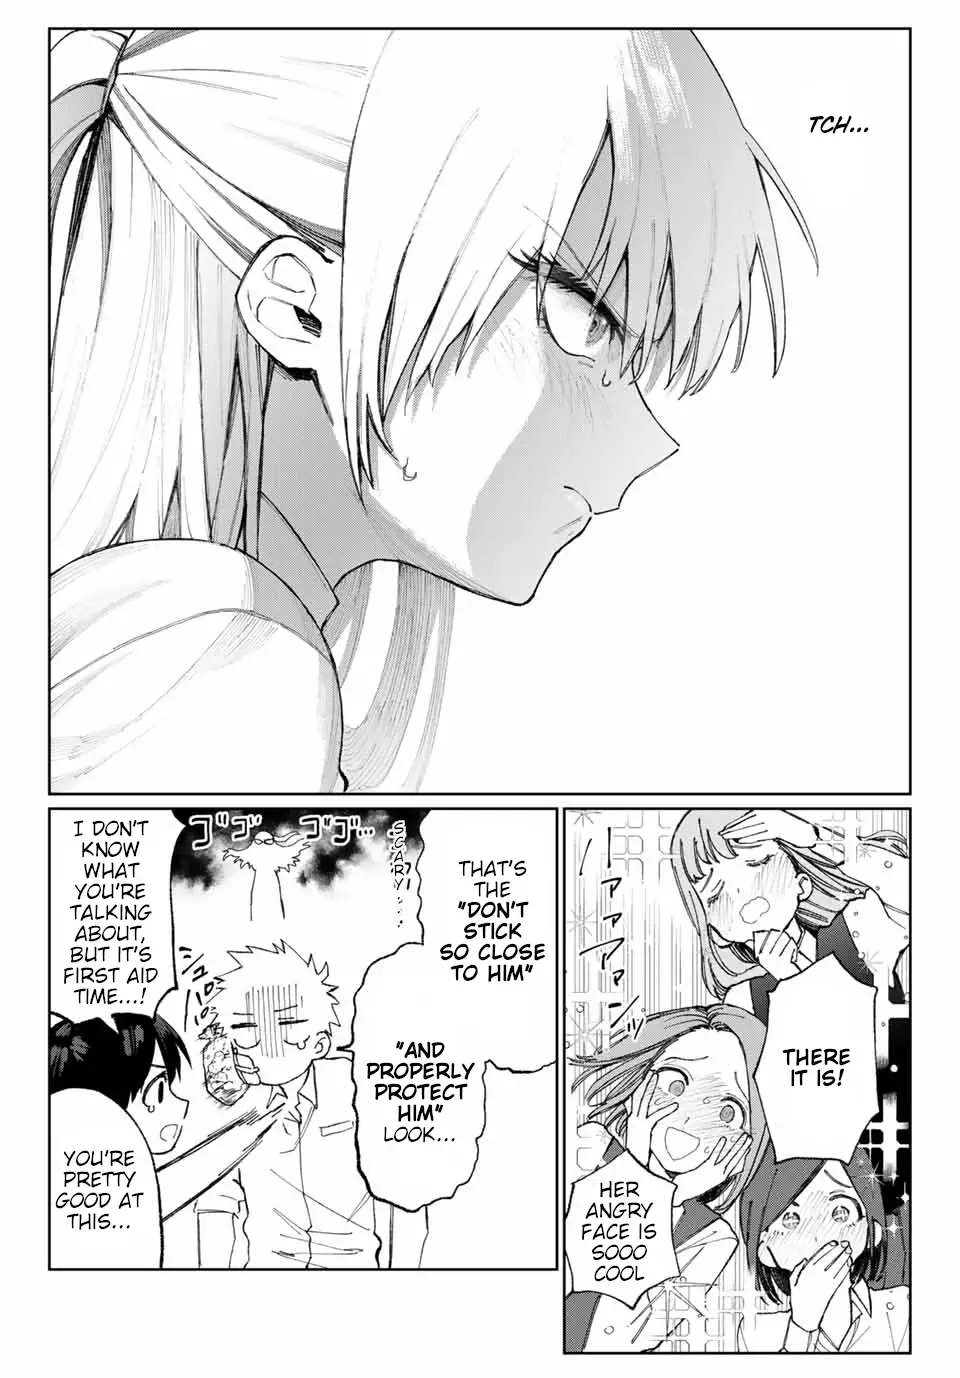 Shikimori's Not Just A Cutie - 20 page 5